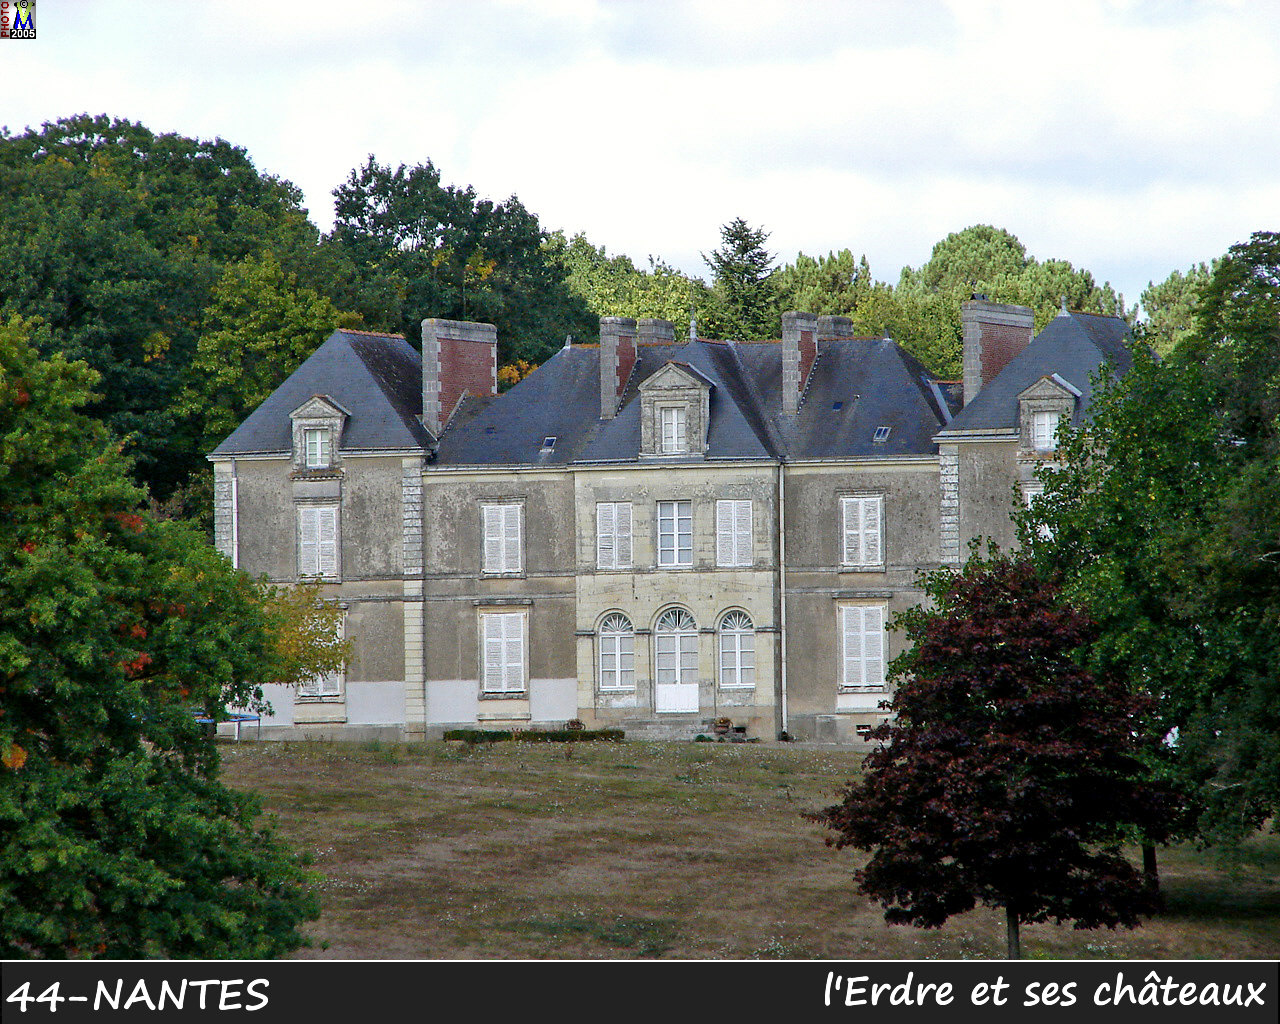 44NANTES_erdre-chateau_118.jpg